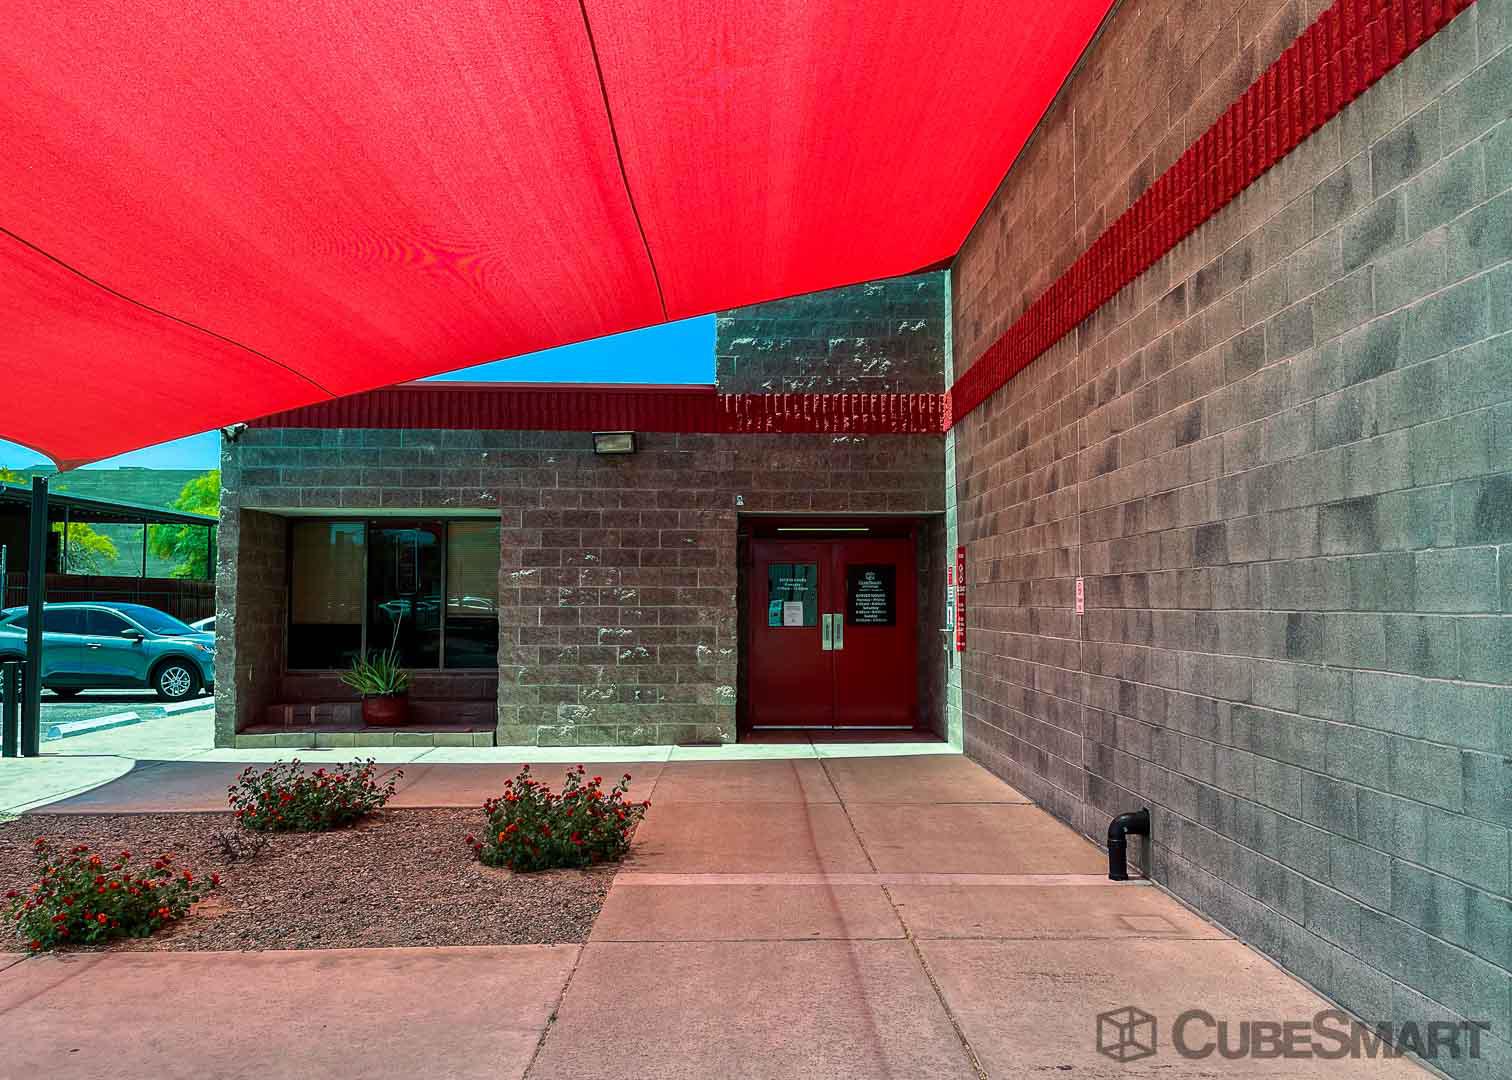 CubeSmart Self Storage Tucson (520)327-8700